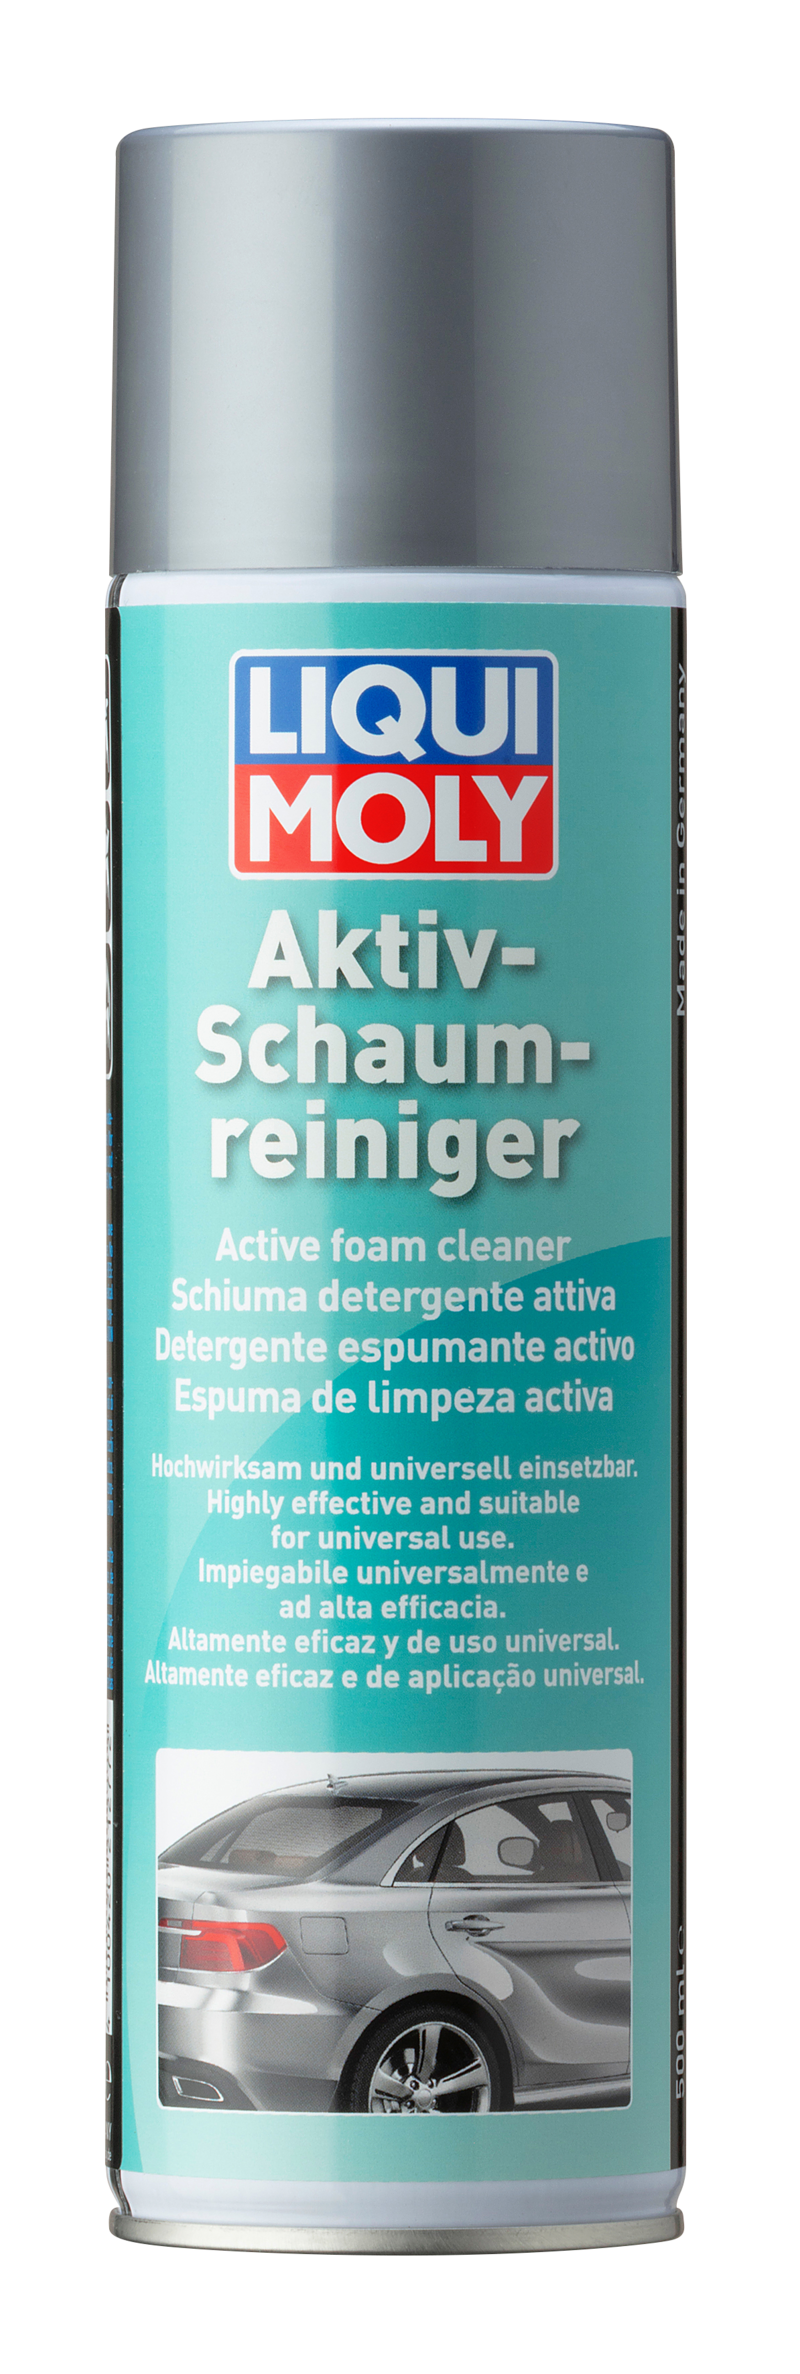 Detergente espumante activo (500 ML) Liqui Moly